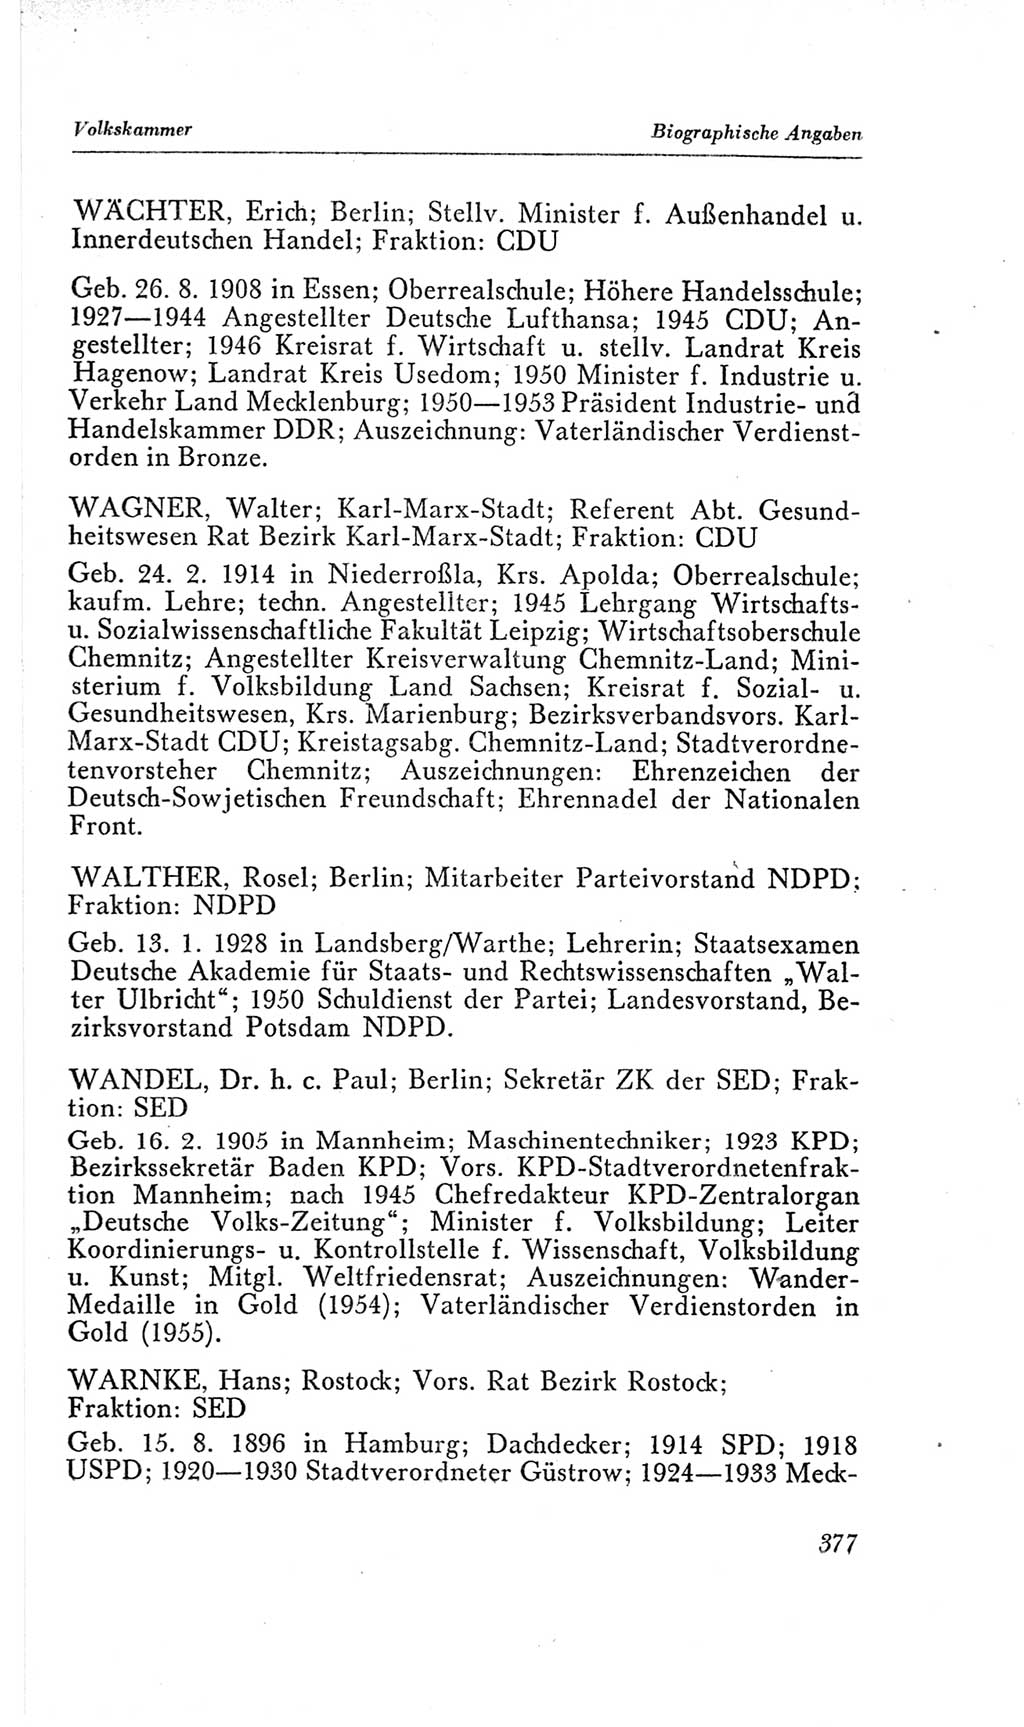 Handbuch der Volkskammer (VK) der Deutschen Demokratischen Republik (DDR), 2. Wahlperiode 1954-1958, Seite 377 (Hdb. VK. DDR, 2. WP. 1954-1958, S. 377)